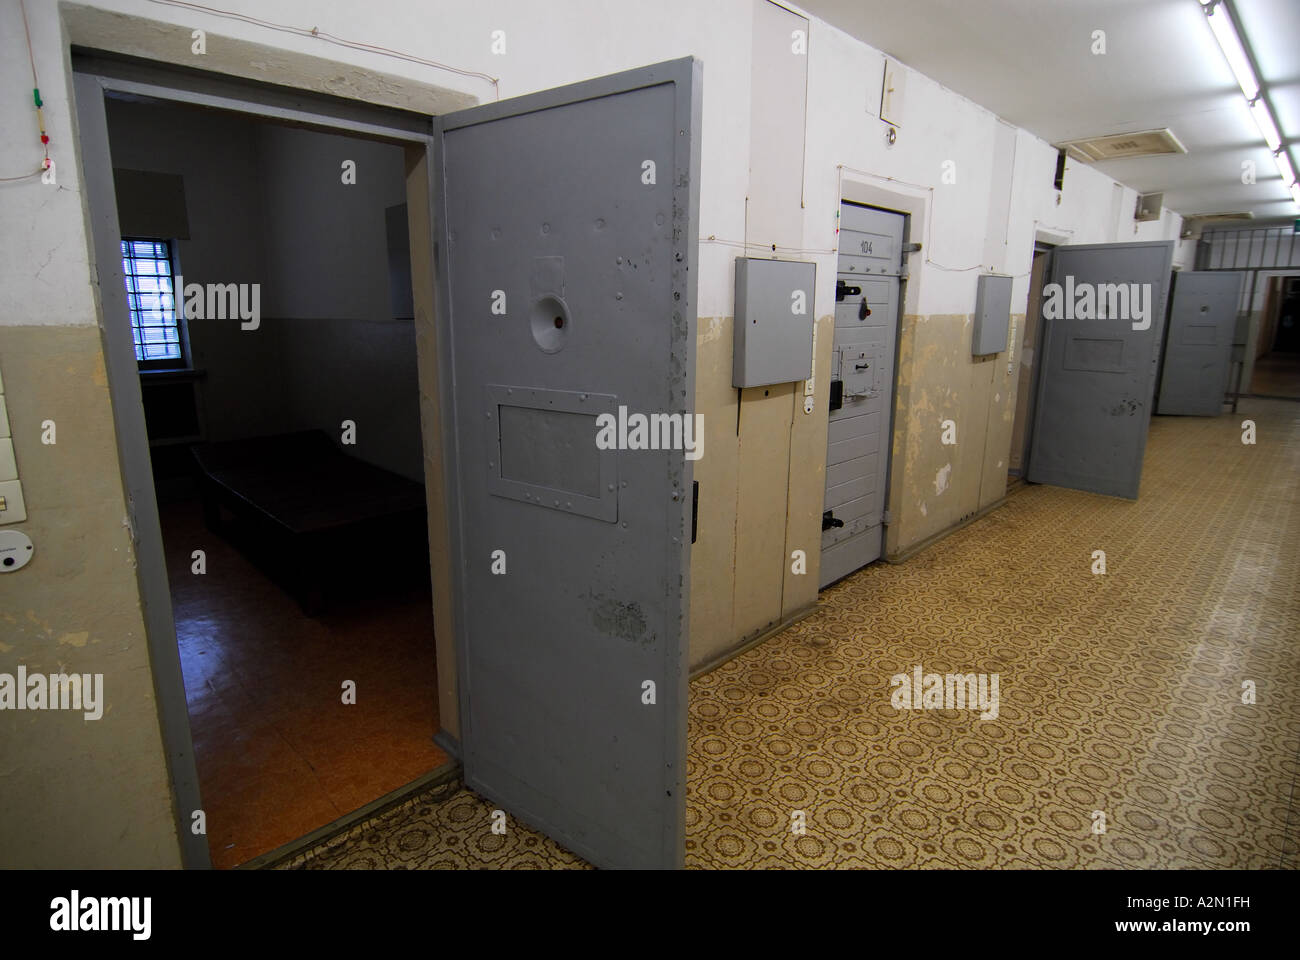 Pasillo bordeado por celdas de prisión, ex cárcel de Alemania Oriental Foto de stock